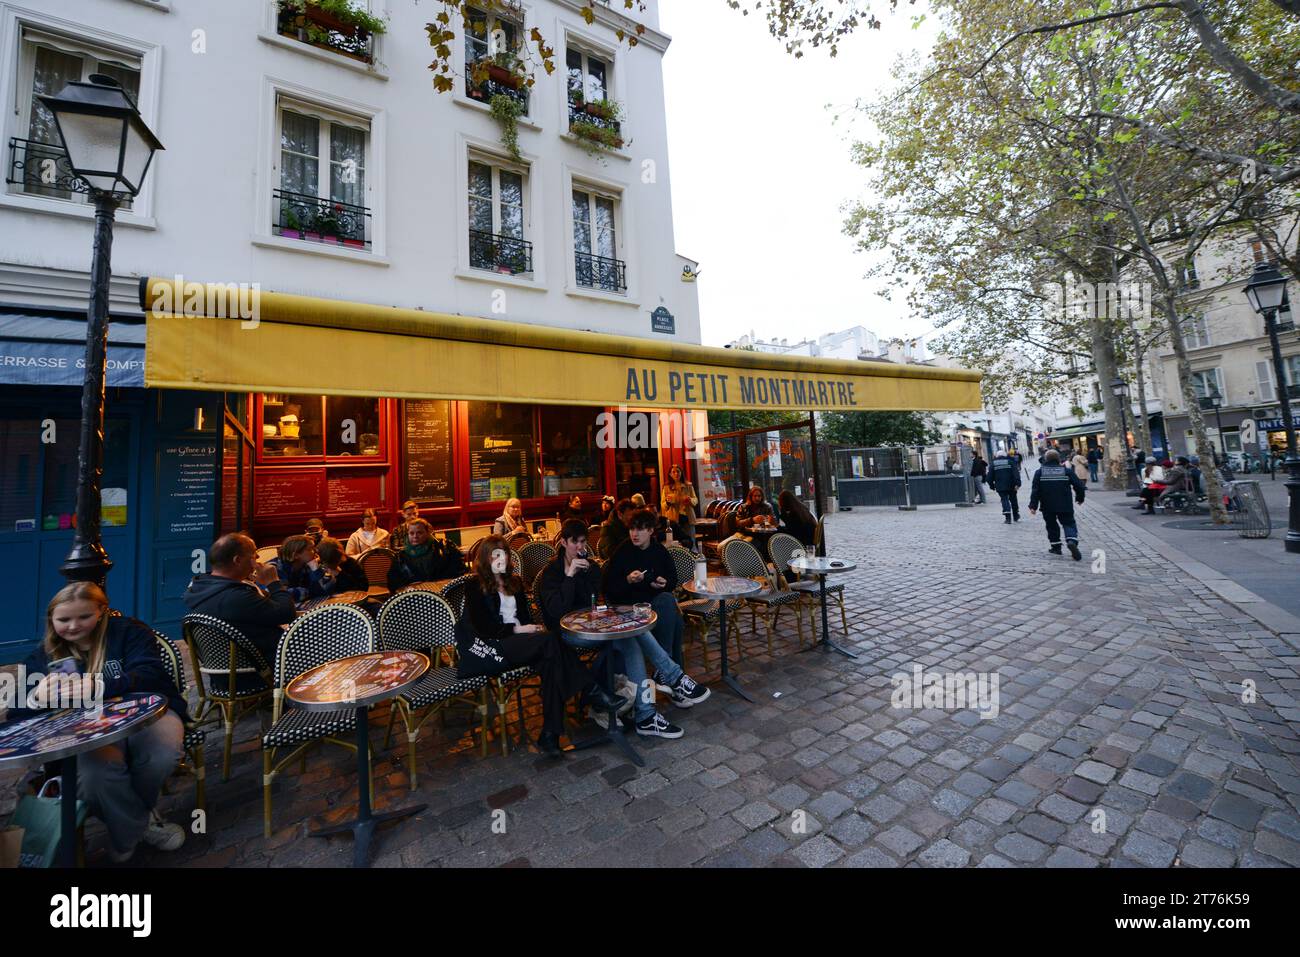 Au Petit Montmartre at the Place des Abbesses, Paris, France. Stock Photo